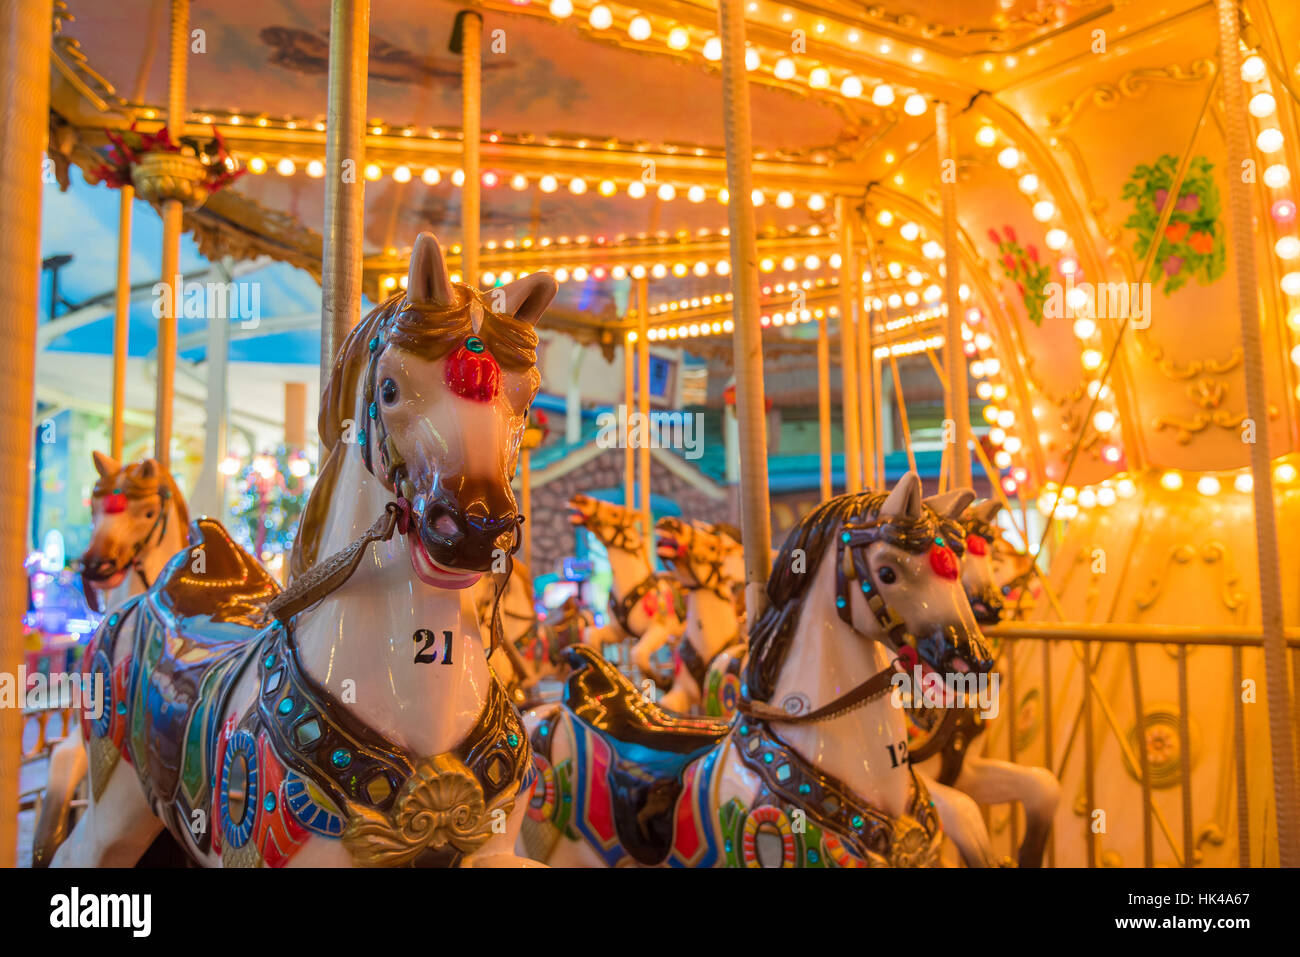 Carrusel o aún Marry-Go-redondo con decoración de luz se centran en la parte delantera del caballo en su ambiente nocturno Foto de stock